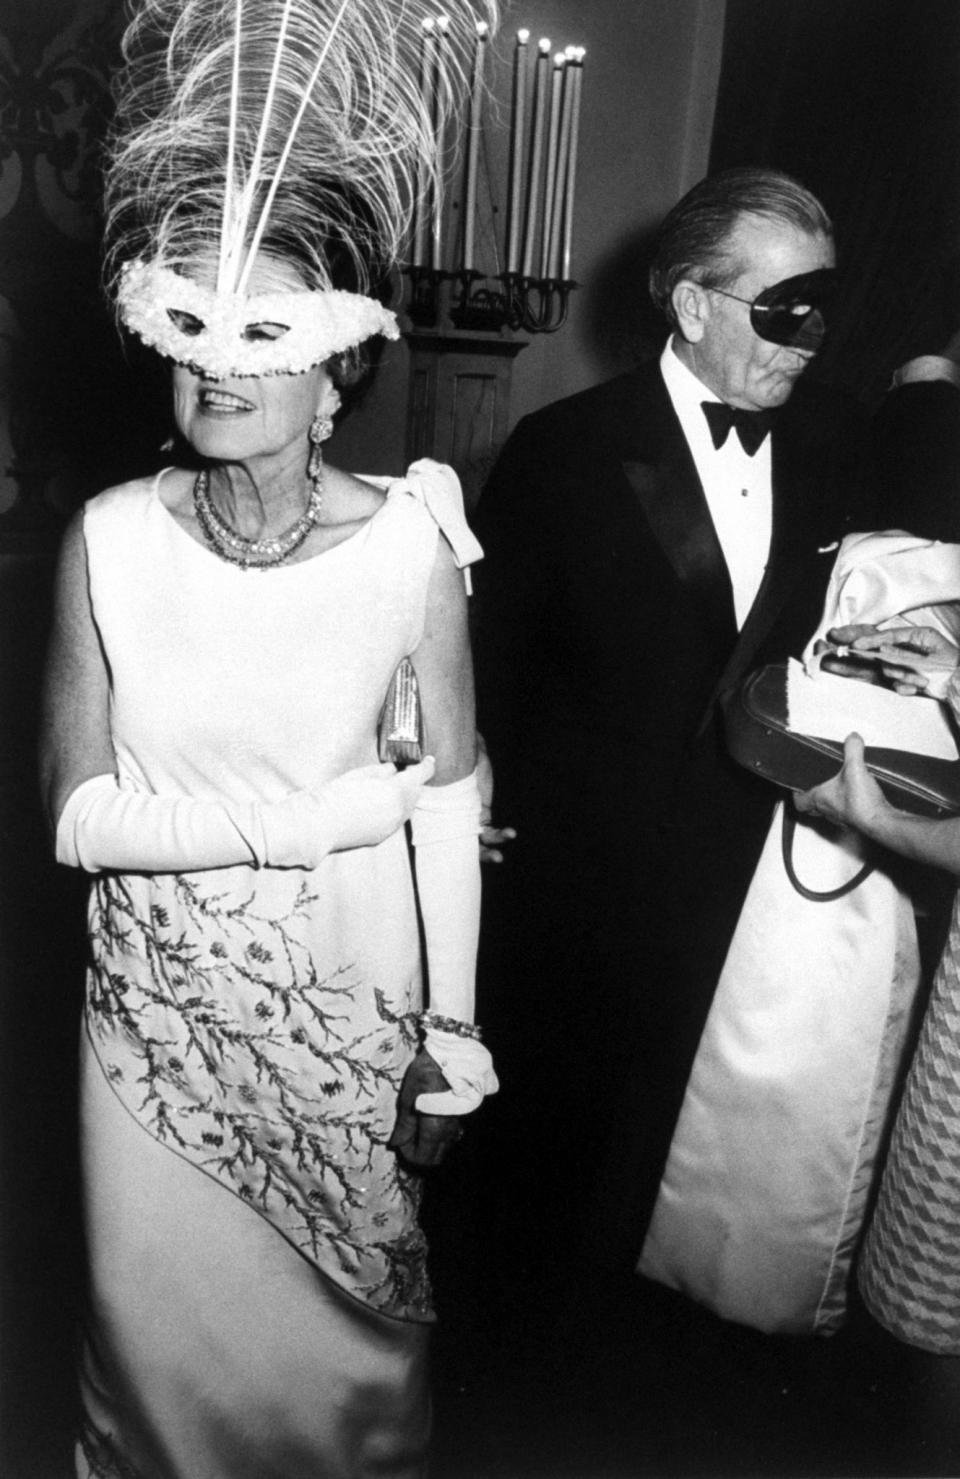 Truman Capote’s Black & White Ball 50th anniversary